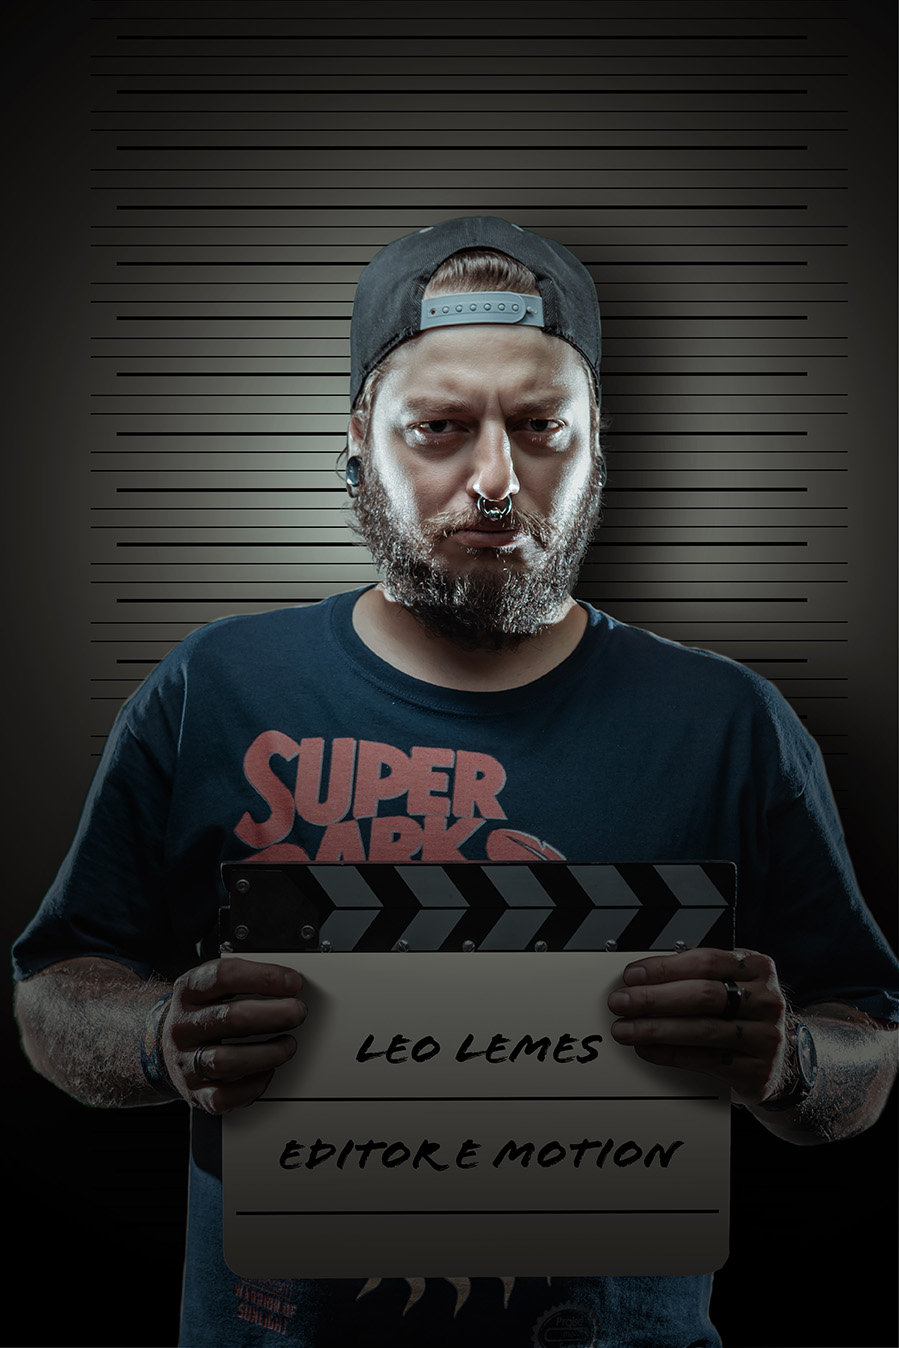 Leo Lemes - Editor e Motion